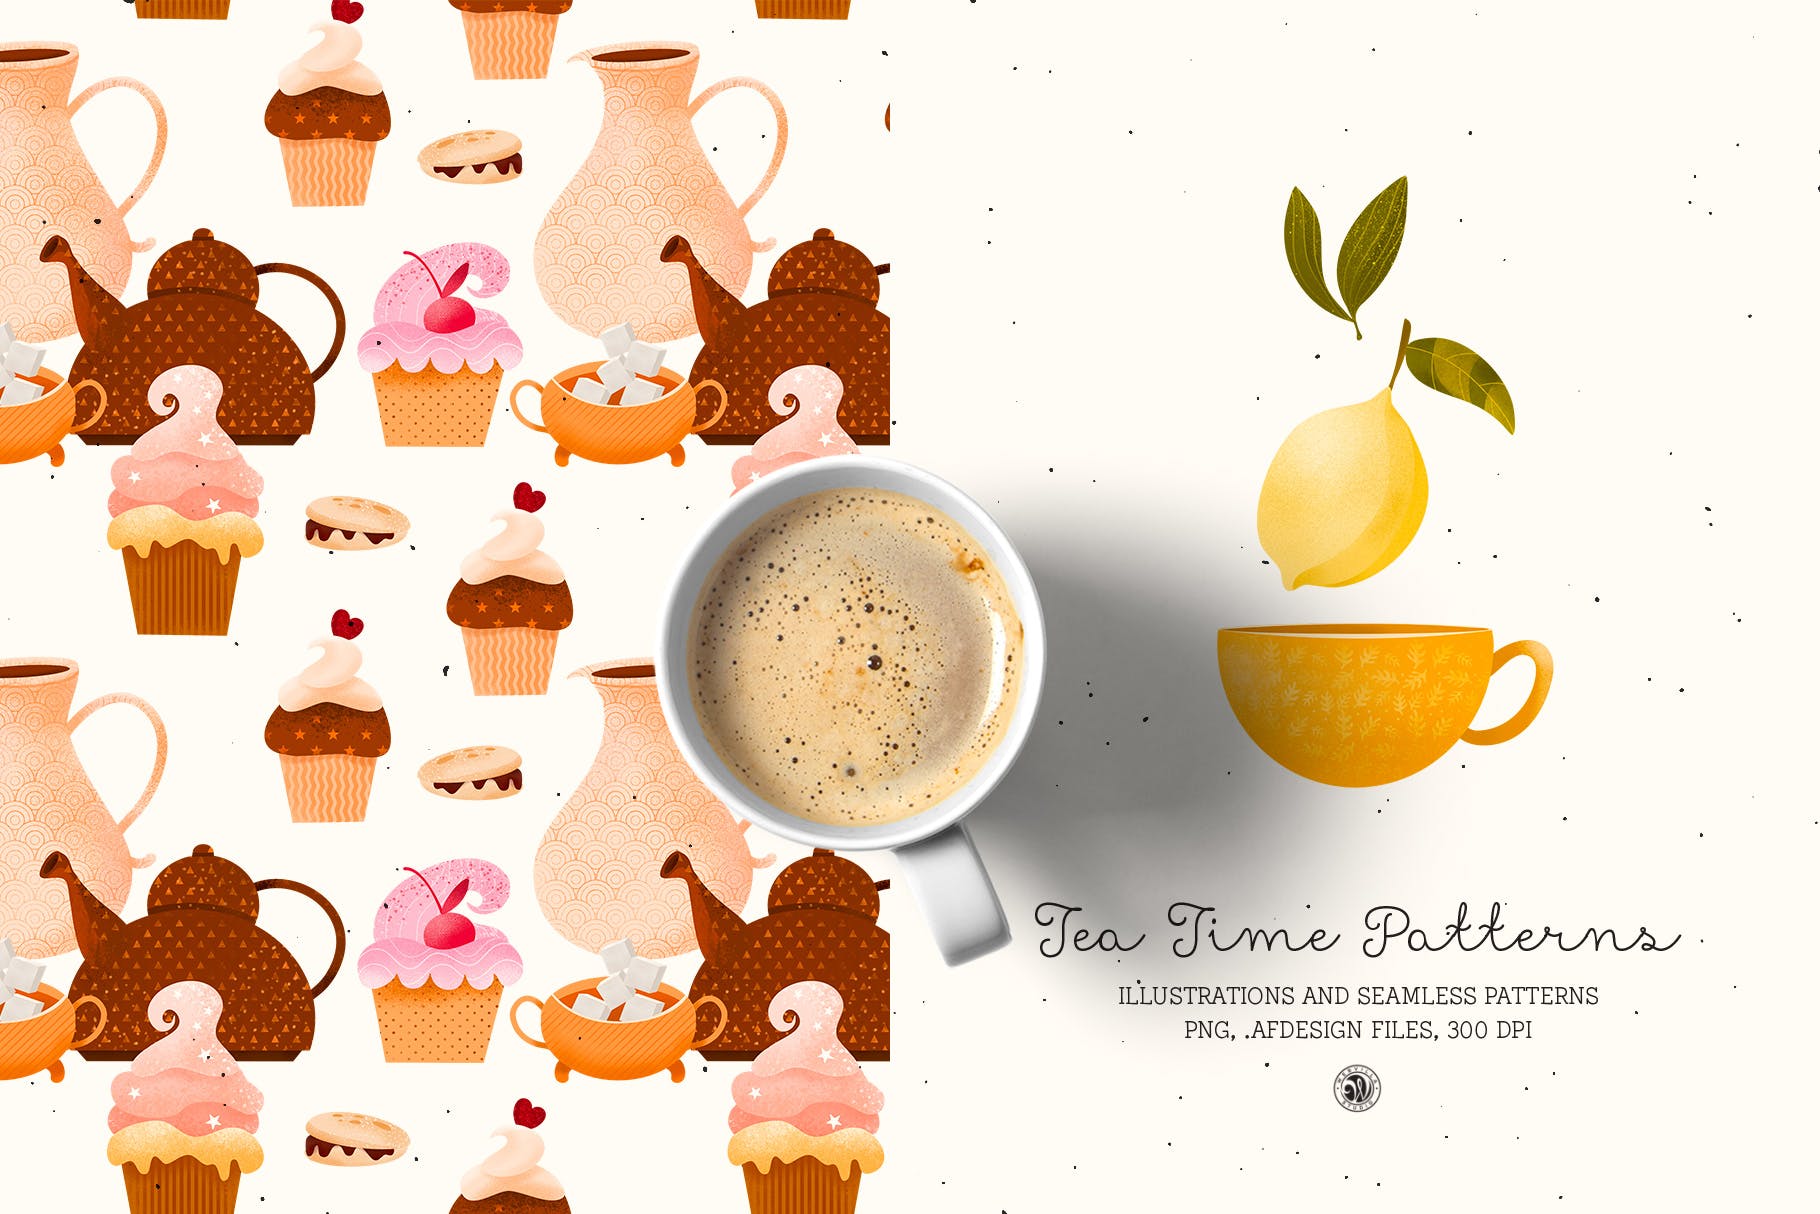 下午茶时光主题点心甜点手绘图案无缝背景素材 Tea Time Patterns插图(1)